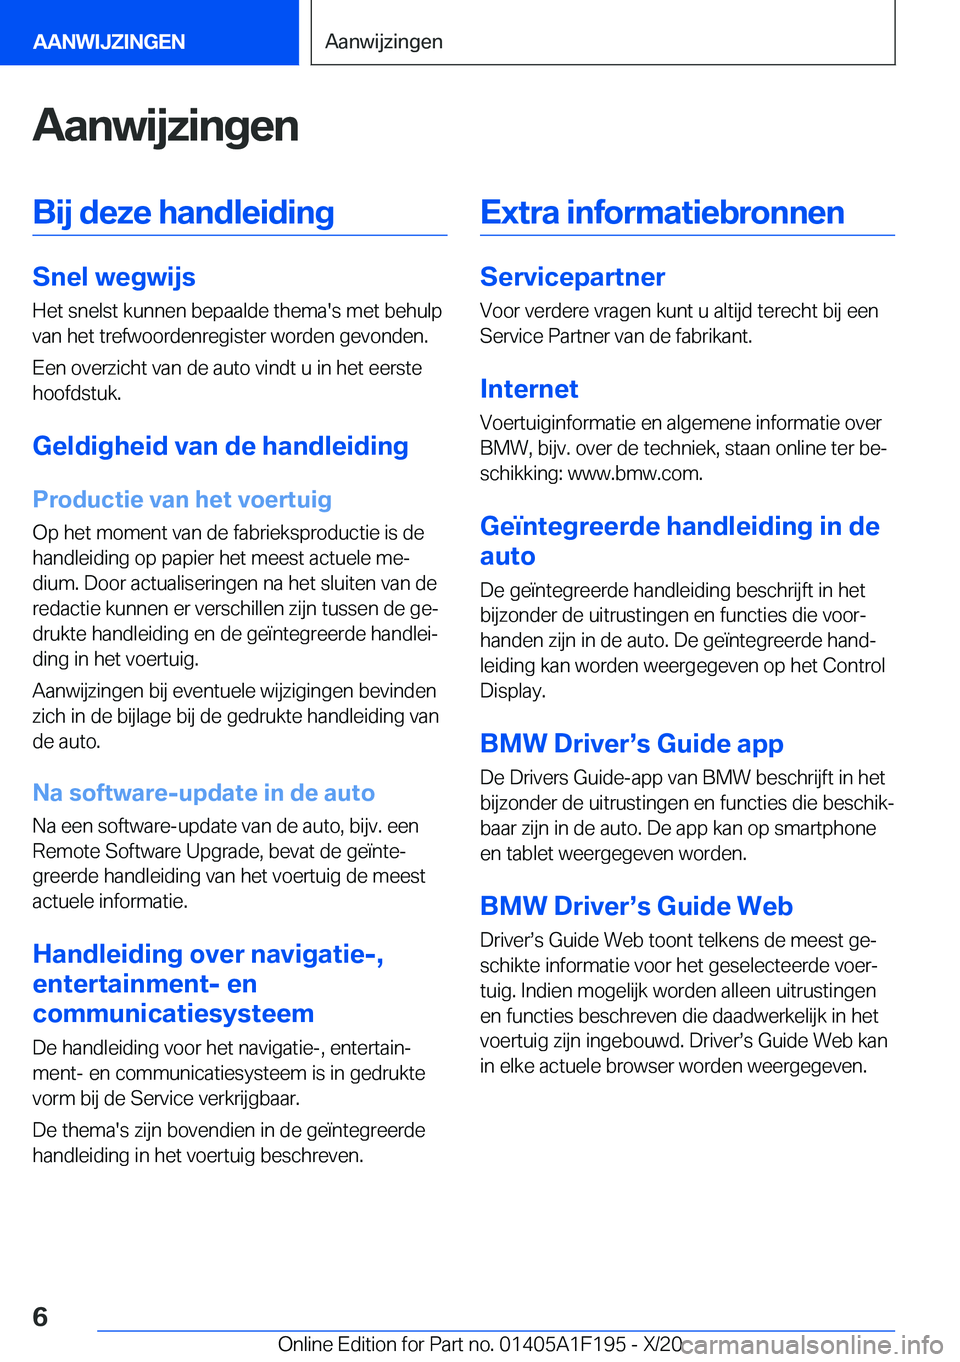 BMW M5 2021  Instructieboekjes (in Dutch) �A�a�n�w�i�j�z�i�n�g�e�n�B�i�j��d�e�z�e��h�a�n�d�l�e�i�d�i�n�g
�S�n�e�l��w�e�g�w�i�j�s
�H�e�t��s�n�e�l�s�t��k�u�n�n�e�n��b�e�p�a�a�l�d�e��t�h�e�m�a�'�s��m�e�t��b�e�h�u�l�p
�v�a�n��h�e�t�